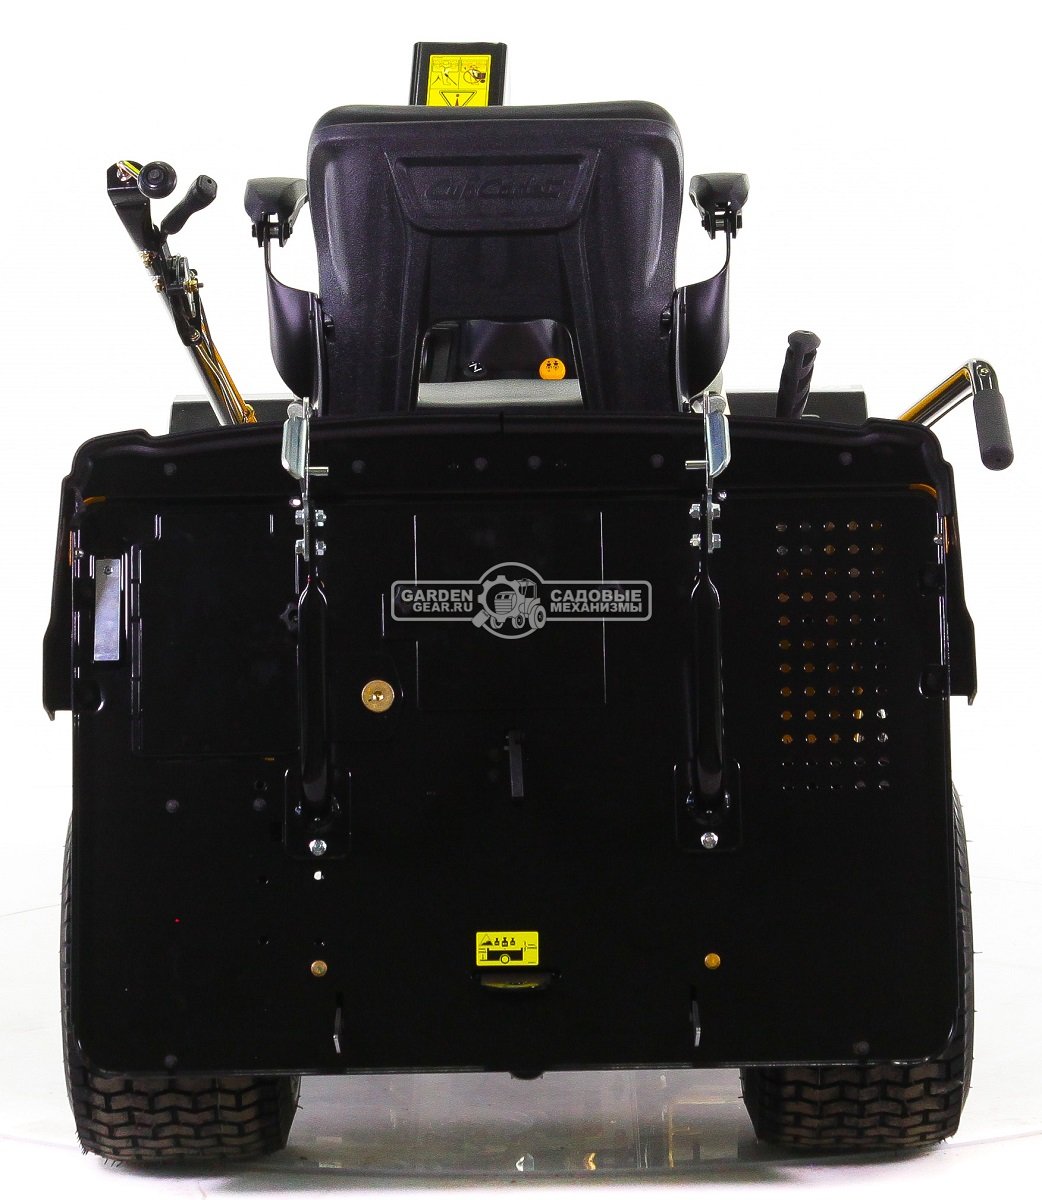 Снегоуборочный трактор Cub Cadet XT3 QR95 с 3X роторным снегоуборщиком и цепями на колеса